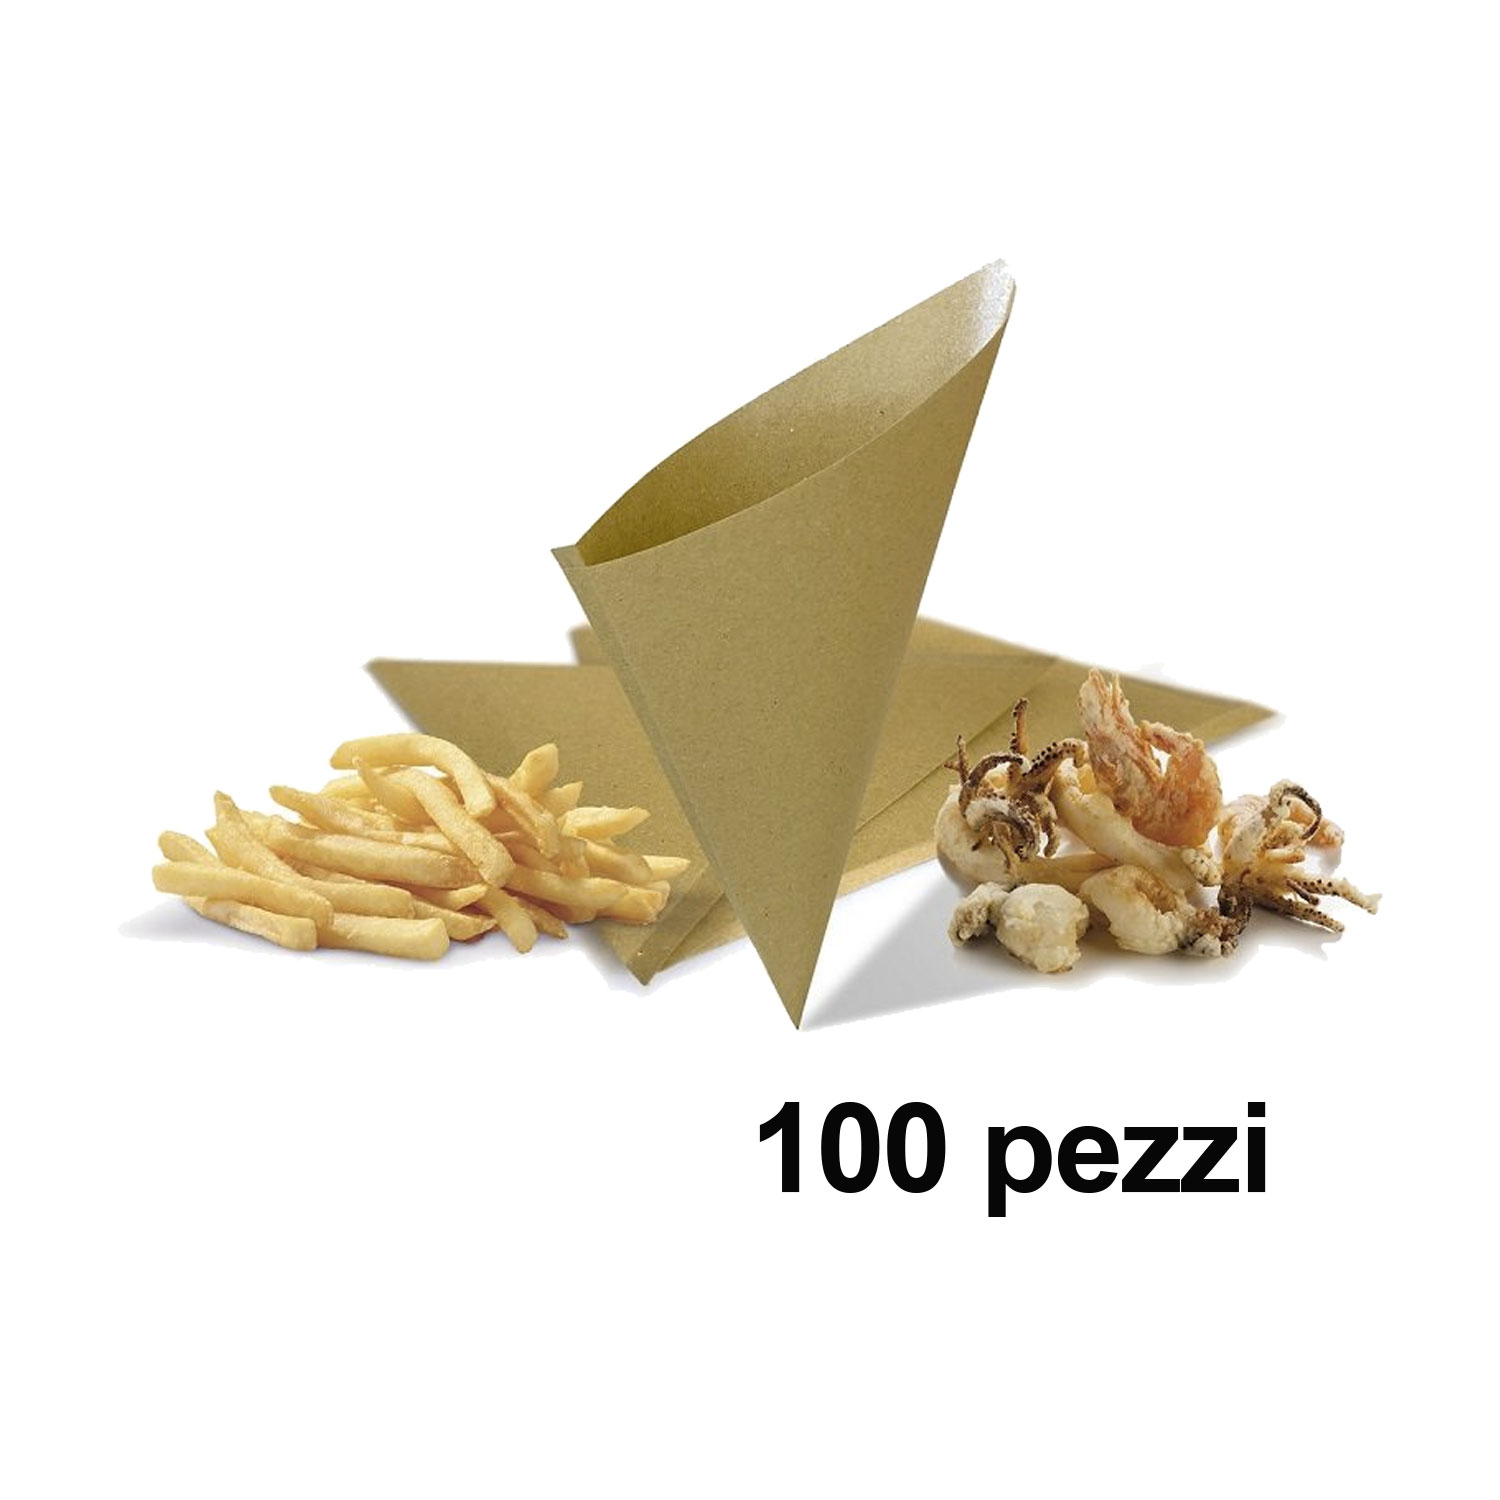 Coni carta paglia politenata per fritti - Prodotti per lo street food